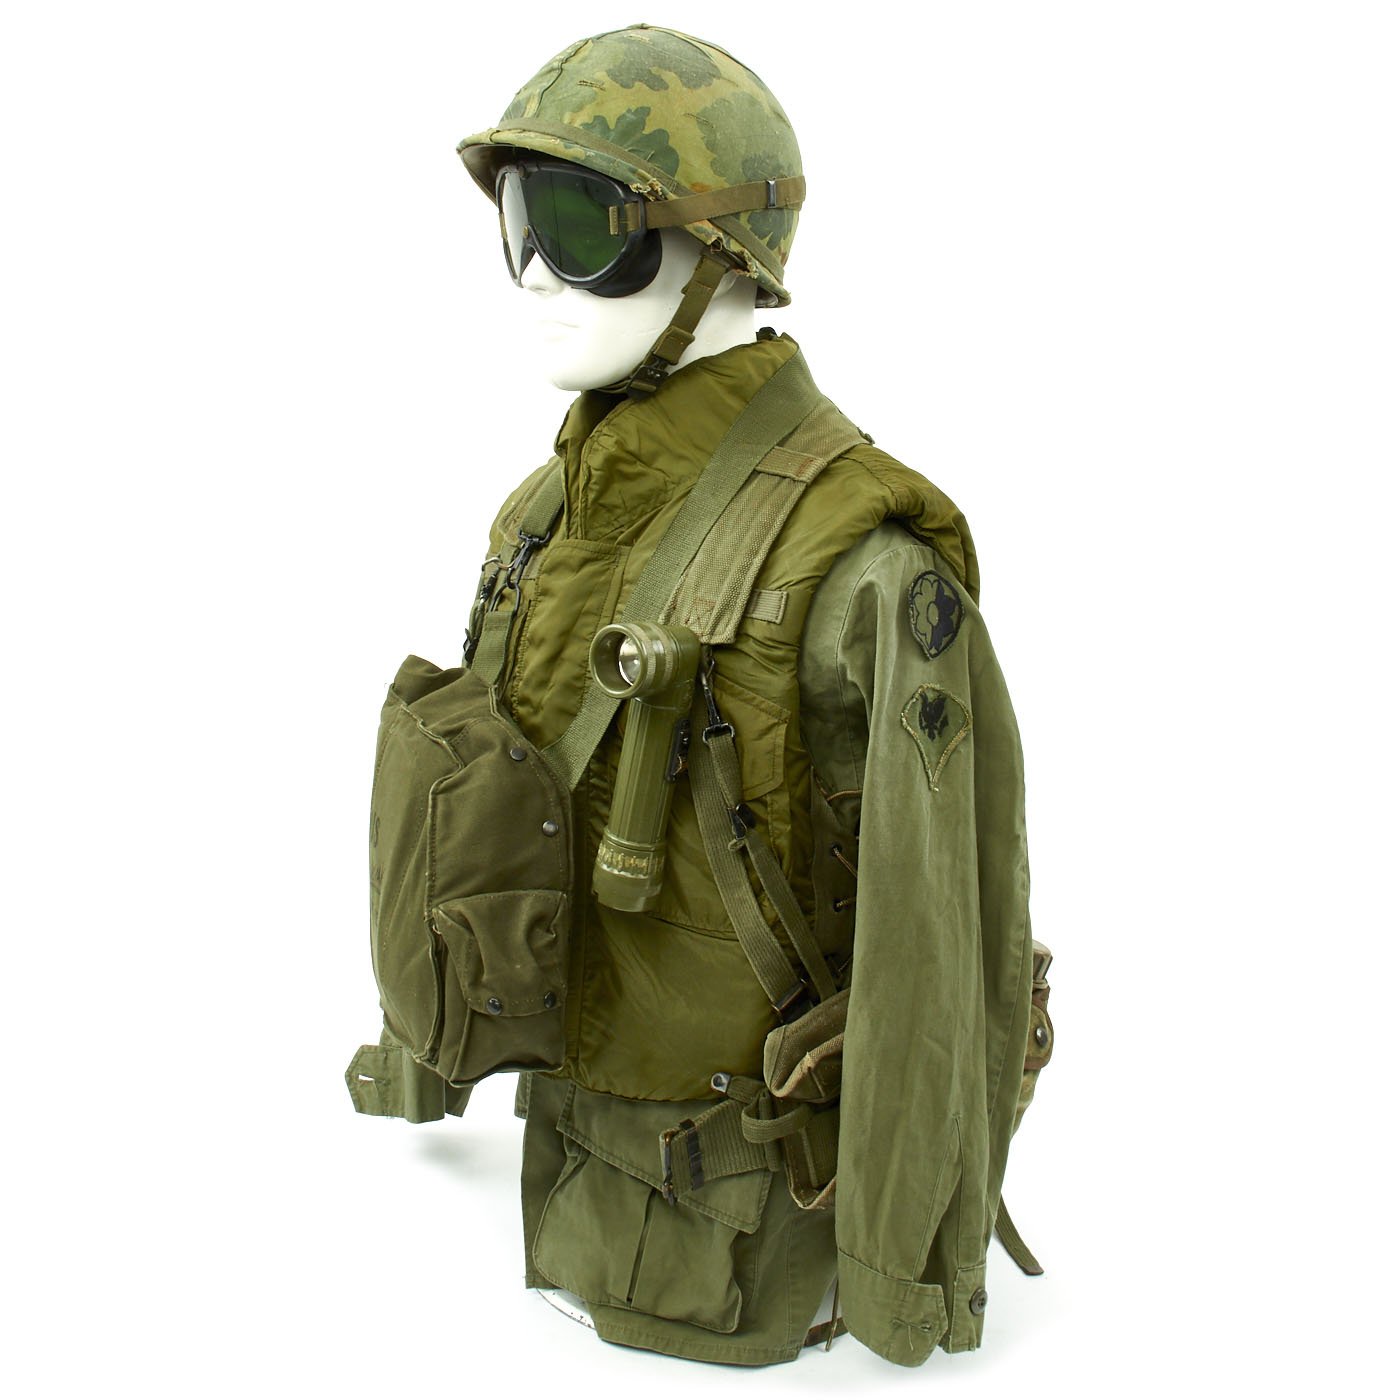 vietnam war soldier equipment